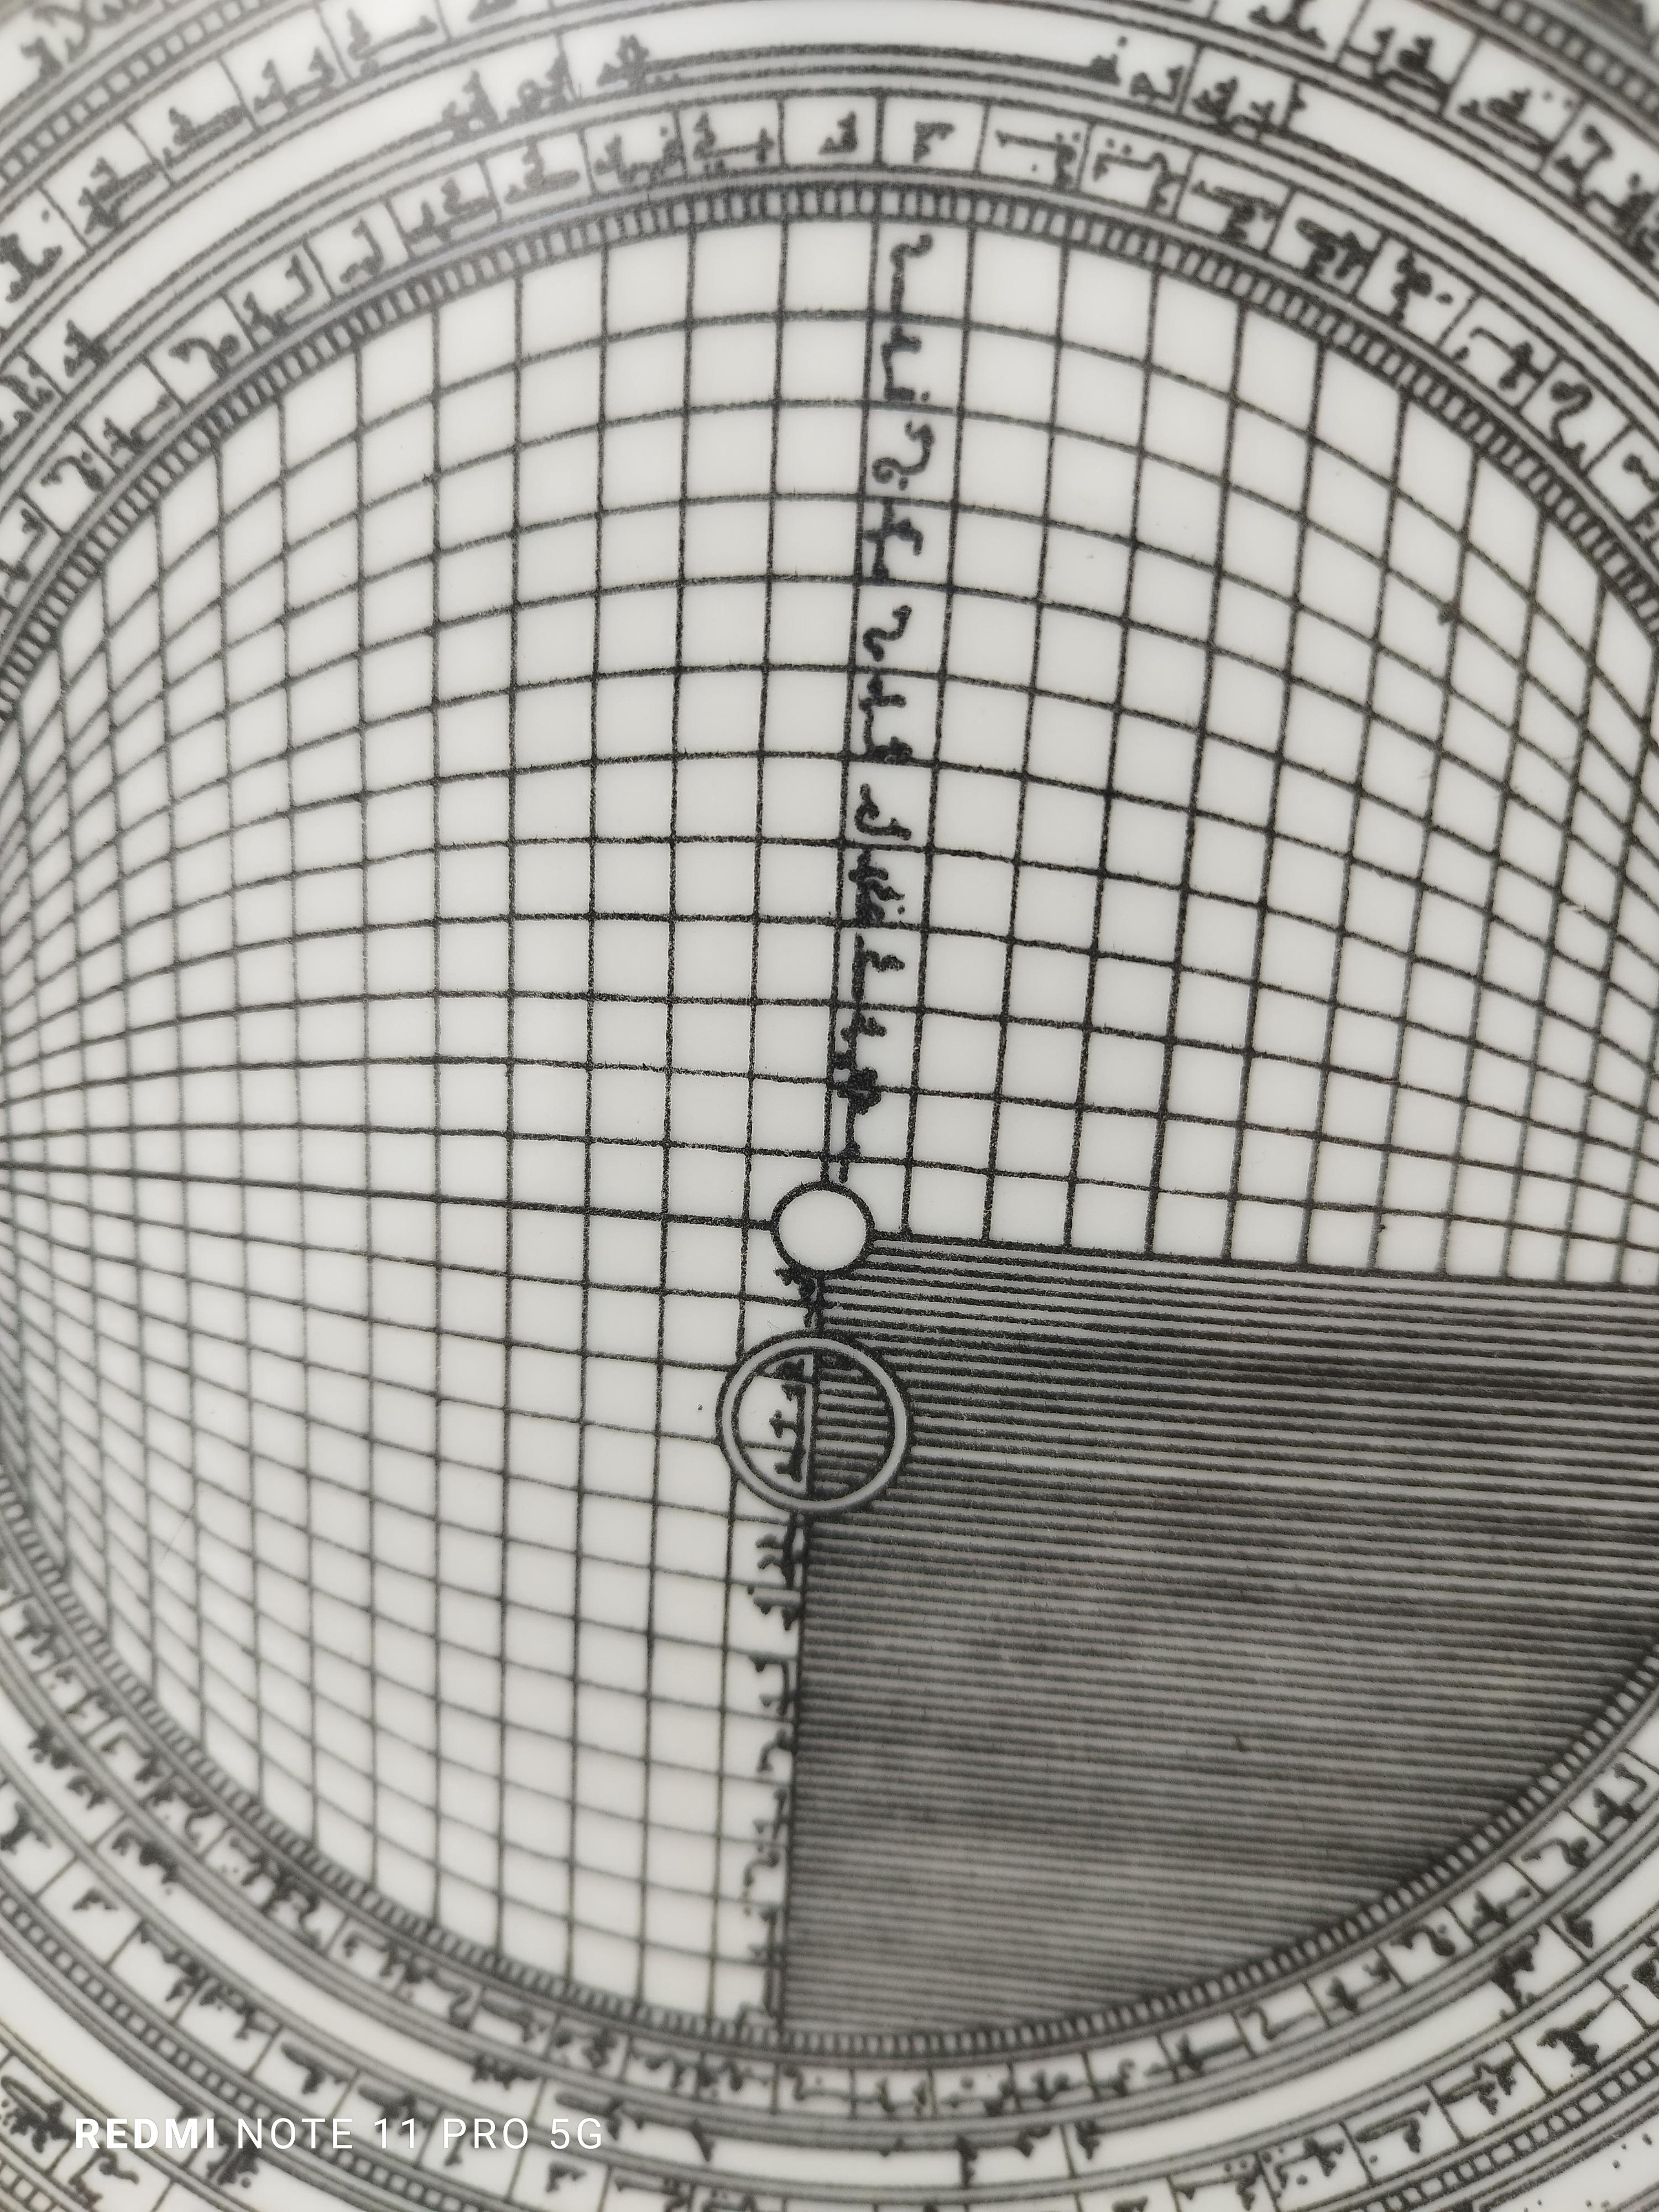 Assiette en porcelaine n° 5 de la série Astrolabe de douze pièces conçue par Piero Fornasetti entre 1965 et 1976. Chaque plaque représente un astrolabe, un inclinomètre élaboré de l'Antiquité classique utilisé par les astronomes, les navigateurs et